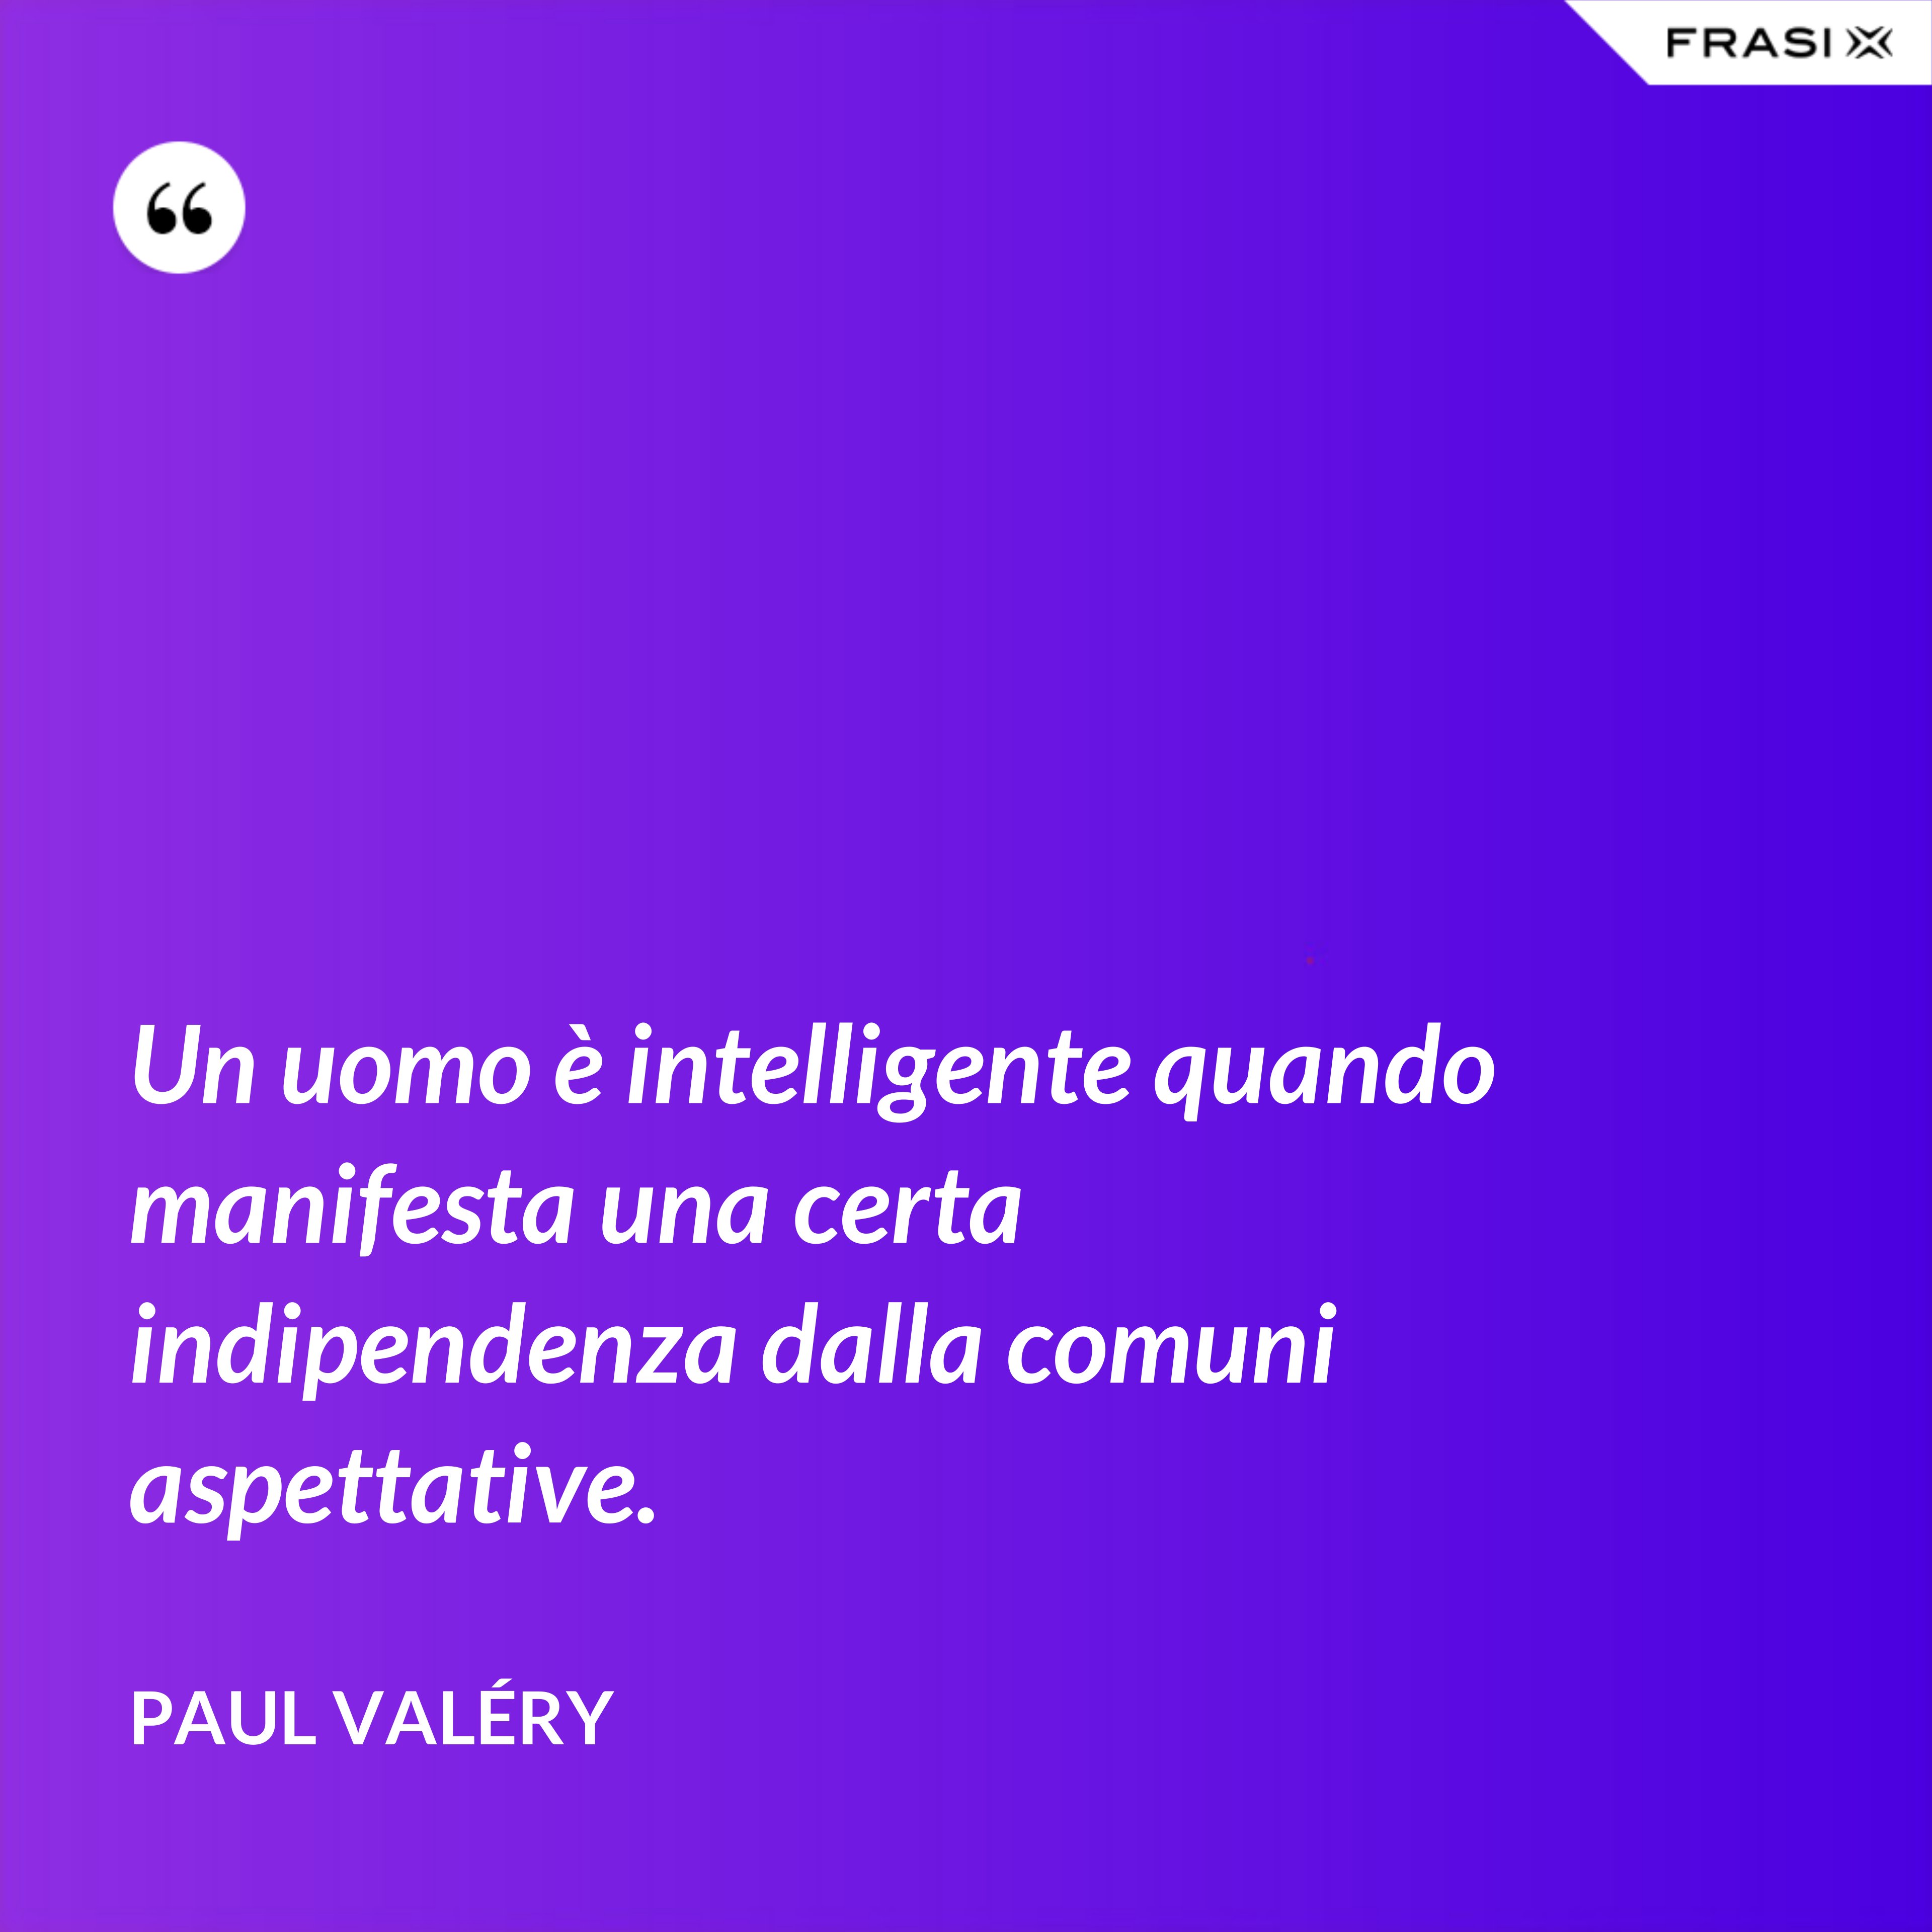 Un uomo è intelligente quando manifesta una certa indipendenza dalla comuni aspettative. - Paul Valéry